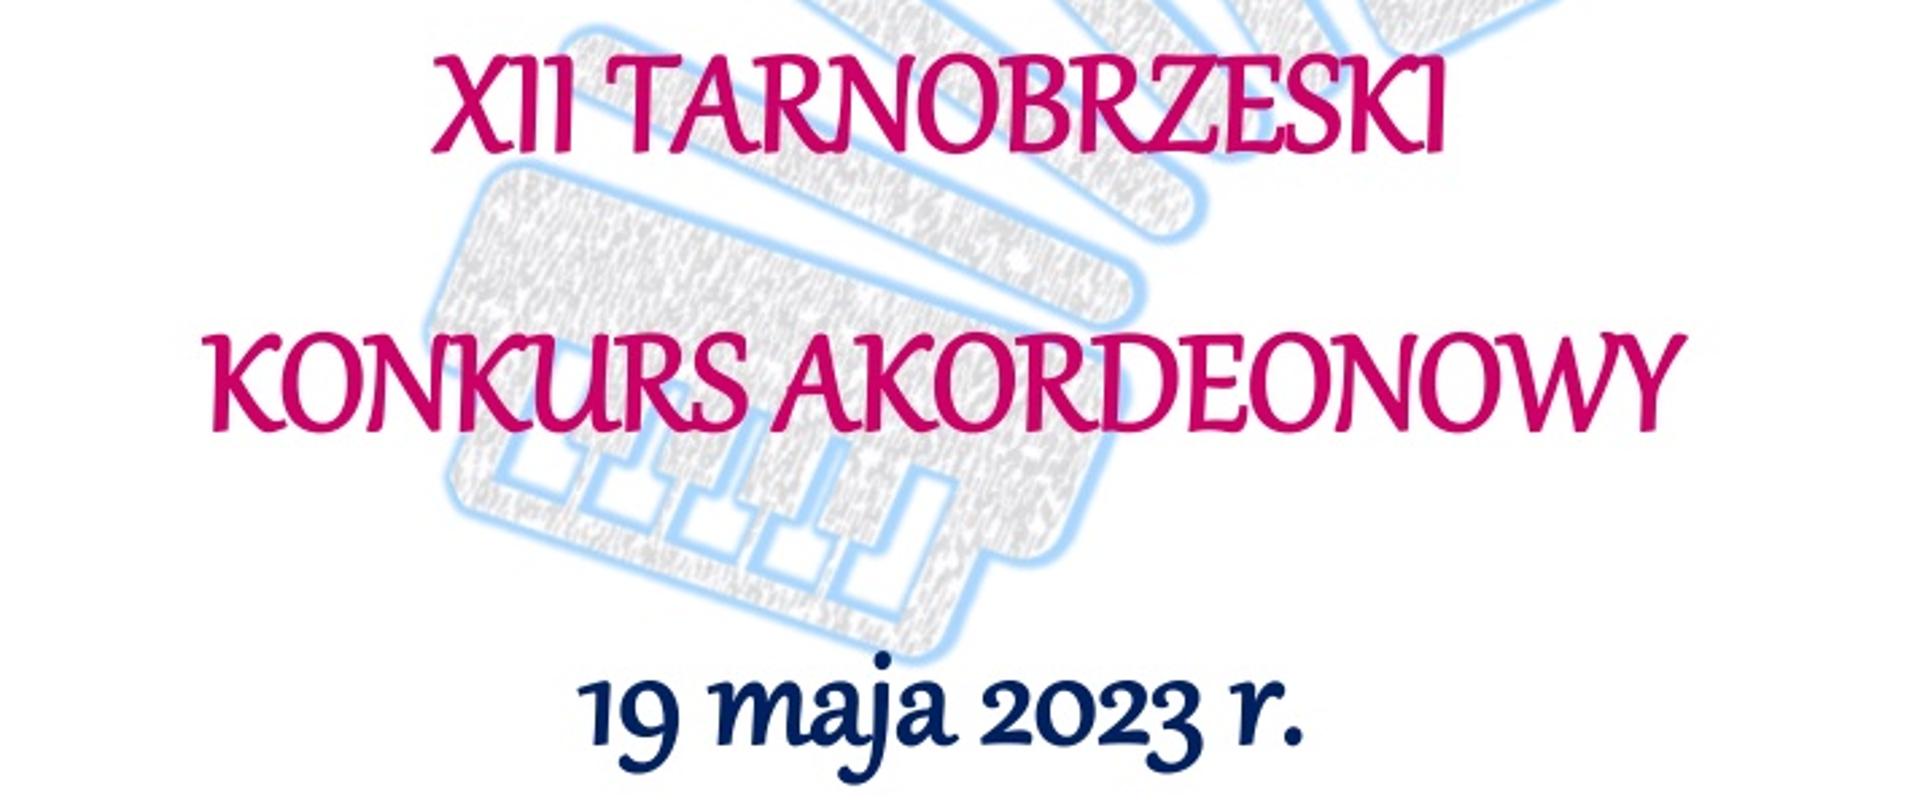 Plakat XII Tarnobrzeskiego Konkursu Akordeonowego, który odbędzie się 19 maja 2023 r. Napisy w kolorze czerwonym, jasnoniebieskim oraz granatowym. W tle ilustracja przedstawiająca akordeon obrysowany jasnoniebieskim kolorem.